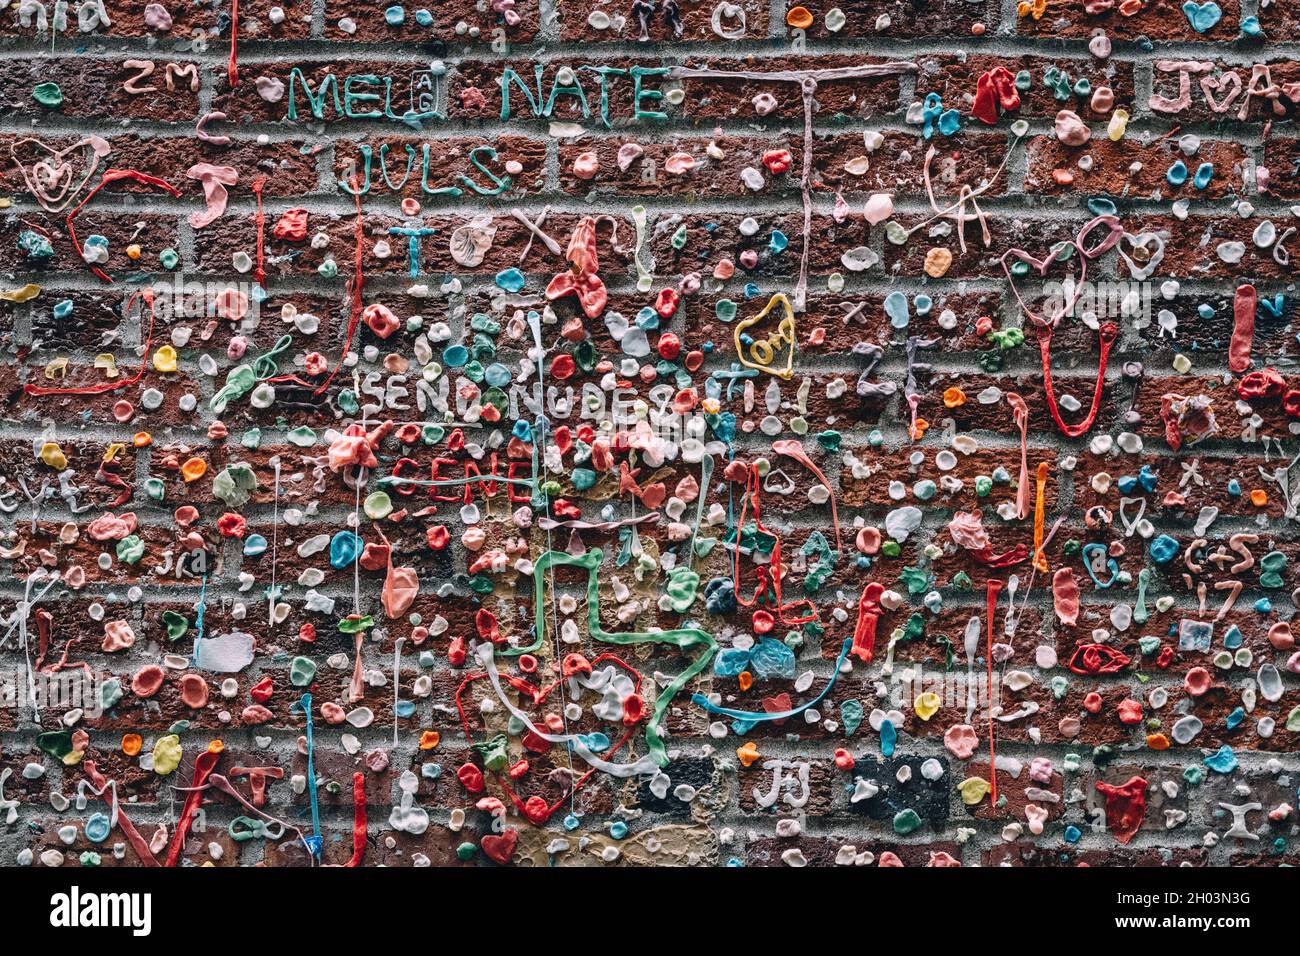 Seattle, Washington, États-Unis d'Amérique - le Market Theatre Gum Wall, un mur de briques recouvert de chewing-gum utilisé. Banque D'Images